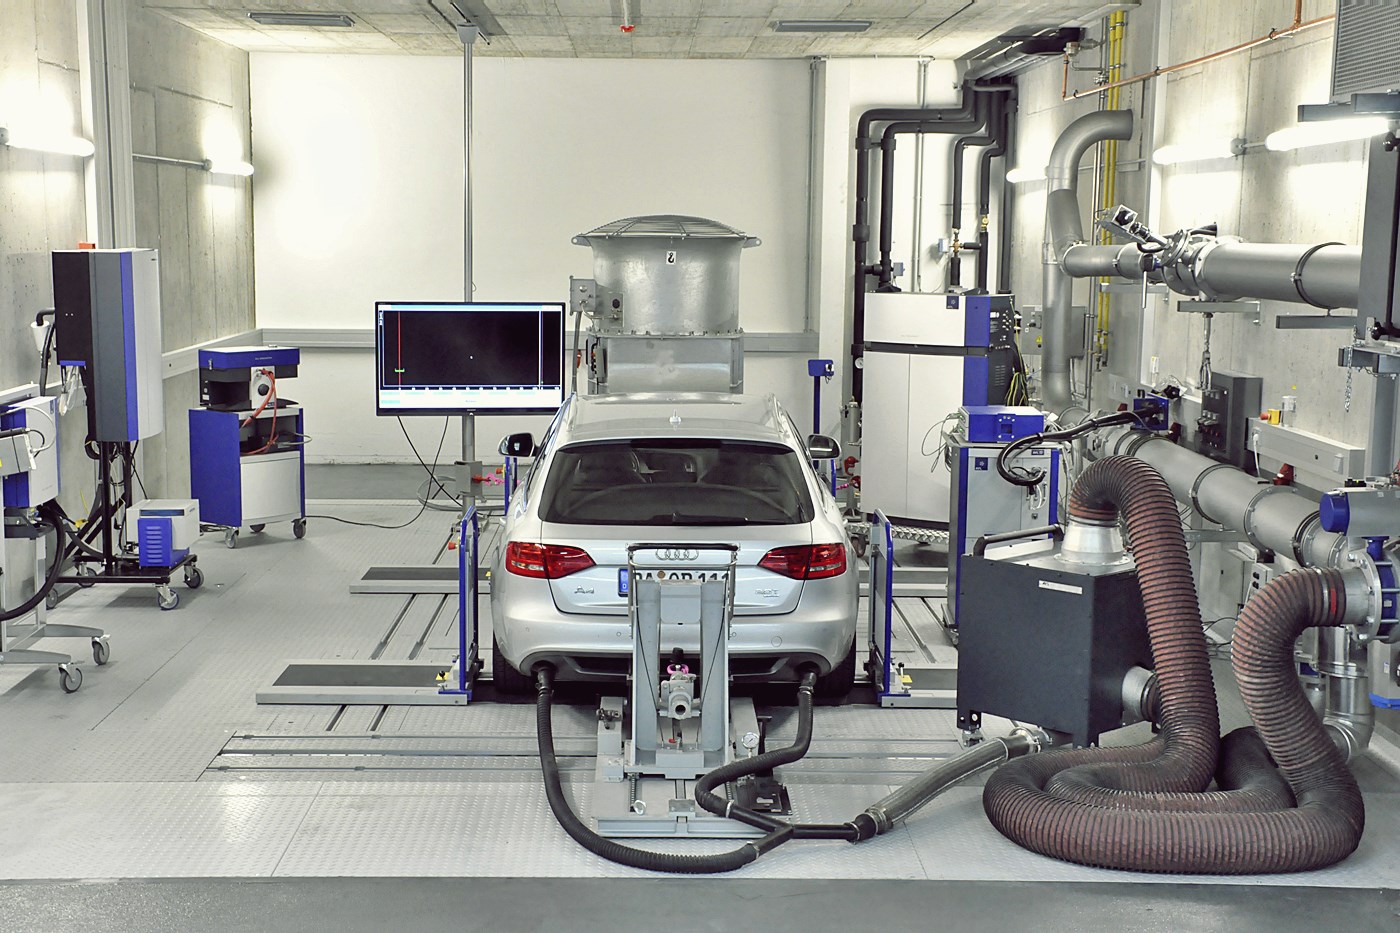 Новое оборудование для процесса. Испытательная лаборатория автомобилей. Участок диагностирования автомобилей. Оборудование для испытания авто. Диагностическая станция автомобиля.